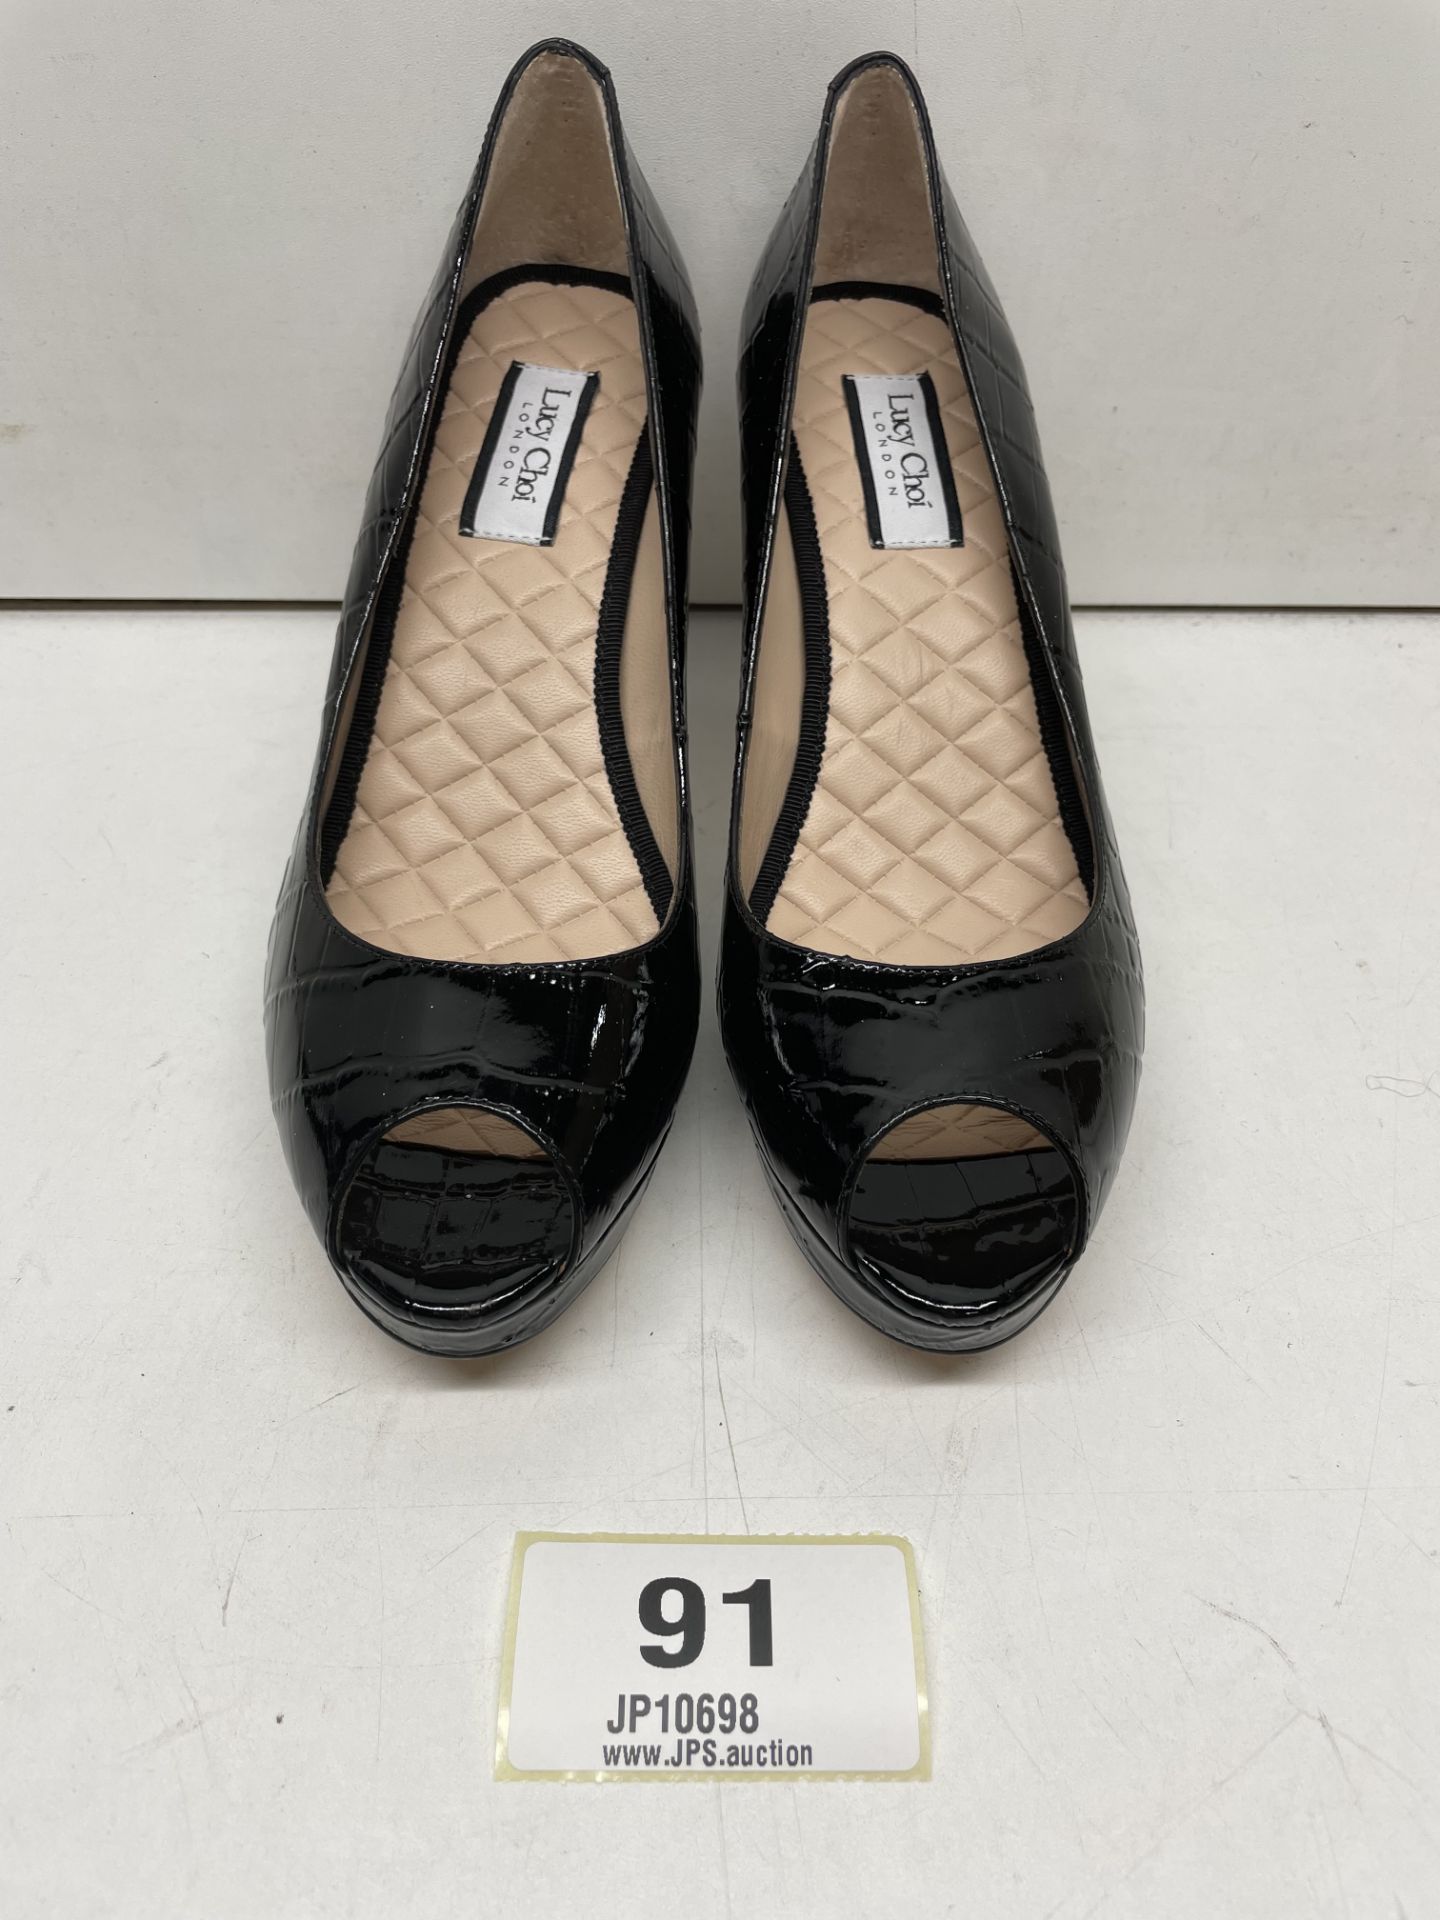 Ex-Display Lucy Choi Peep Toe Platform Heels | Eur 37 - Image 2 of 4